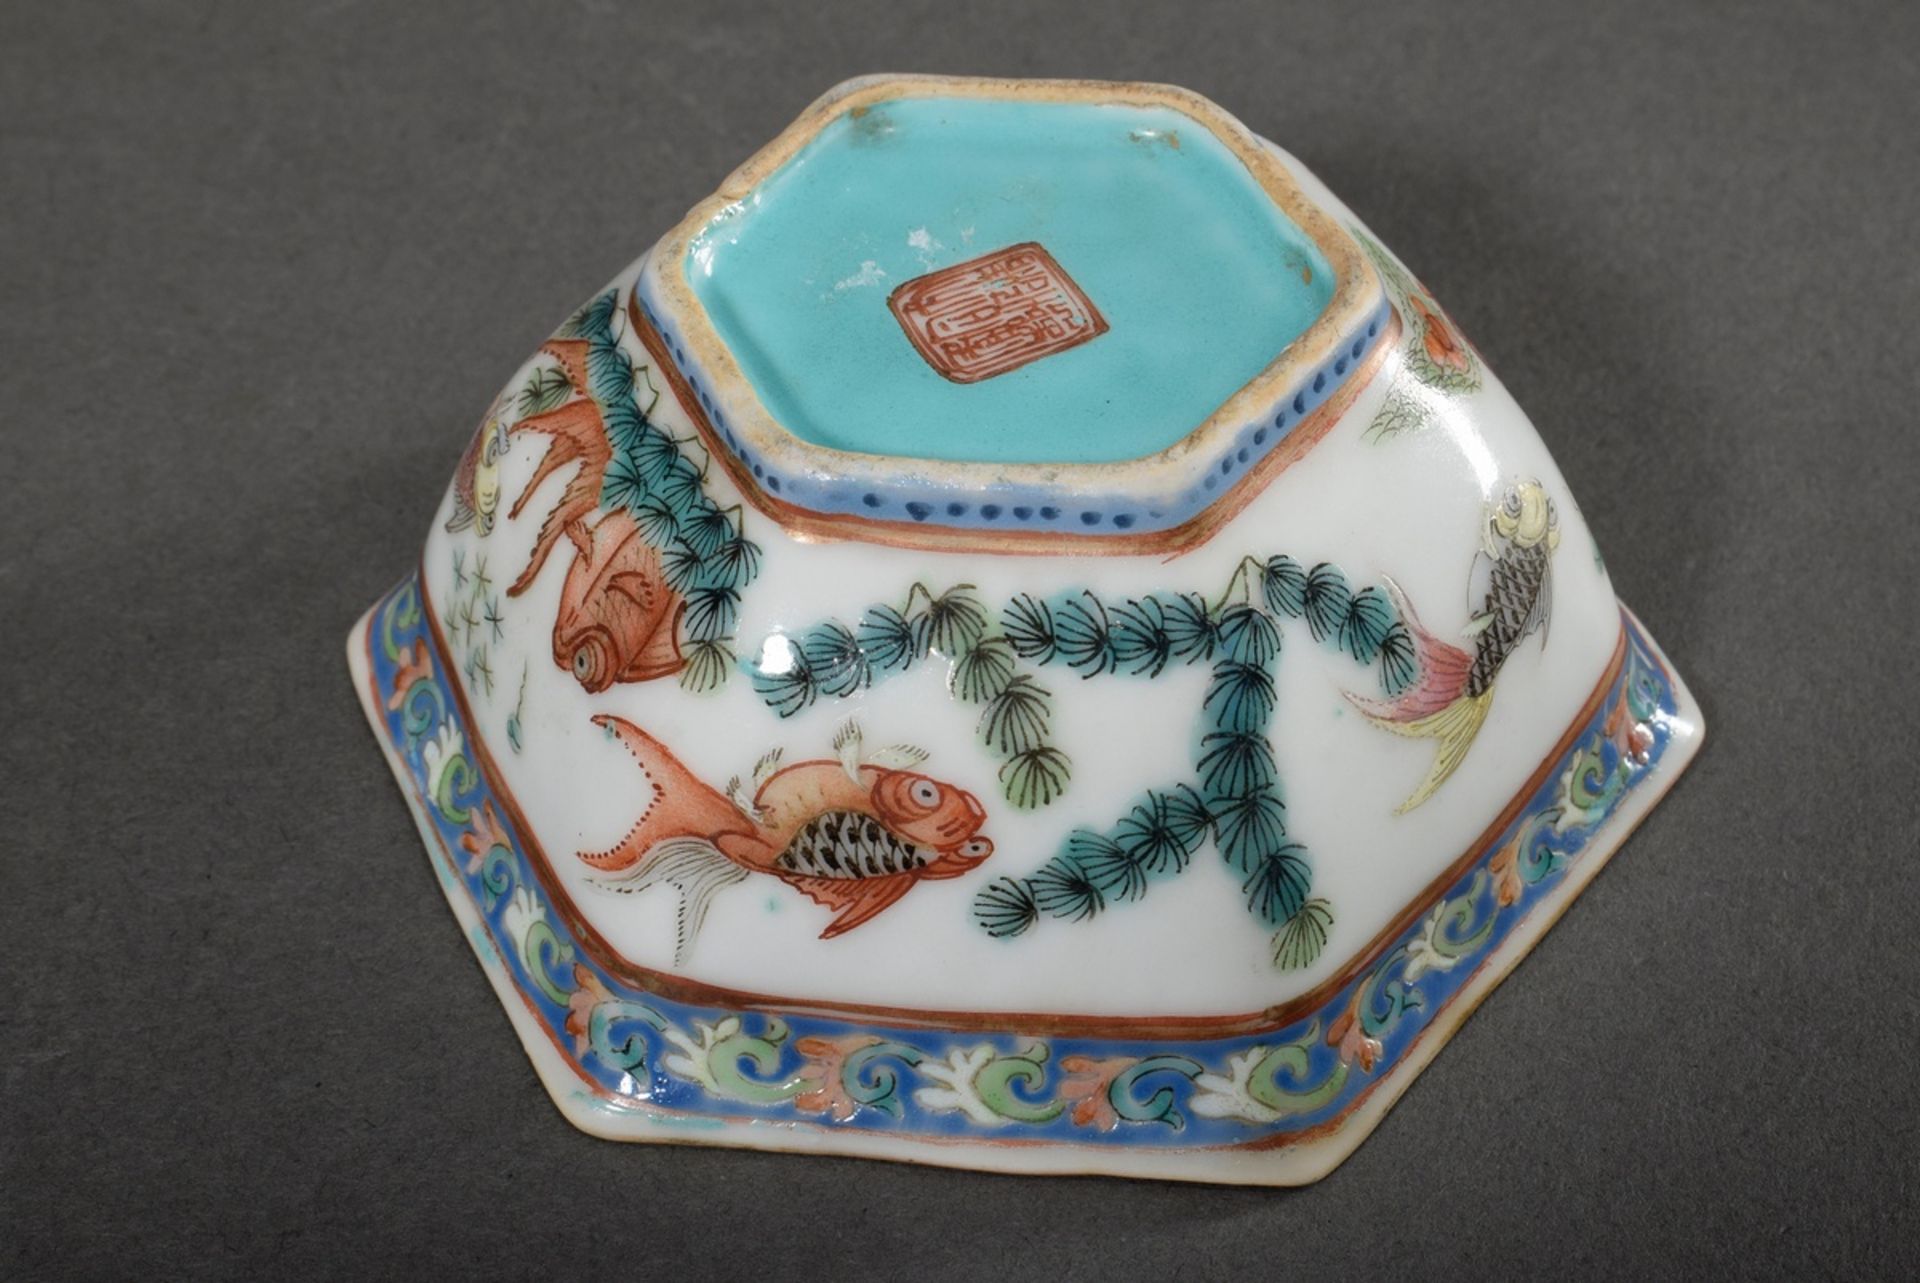 15 Diverse Teile chinesisches Porzellan: 2 Tassen (H. 6/6,5cm), 5 Koppchen (H. 3,6/4cm), 1 fünfecki - Bild 5 aus 14